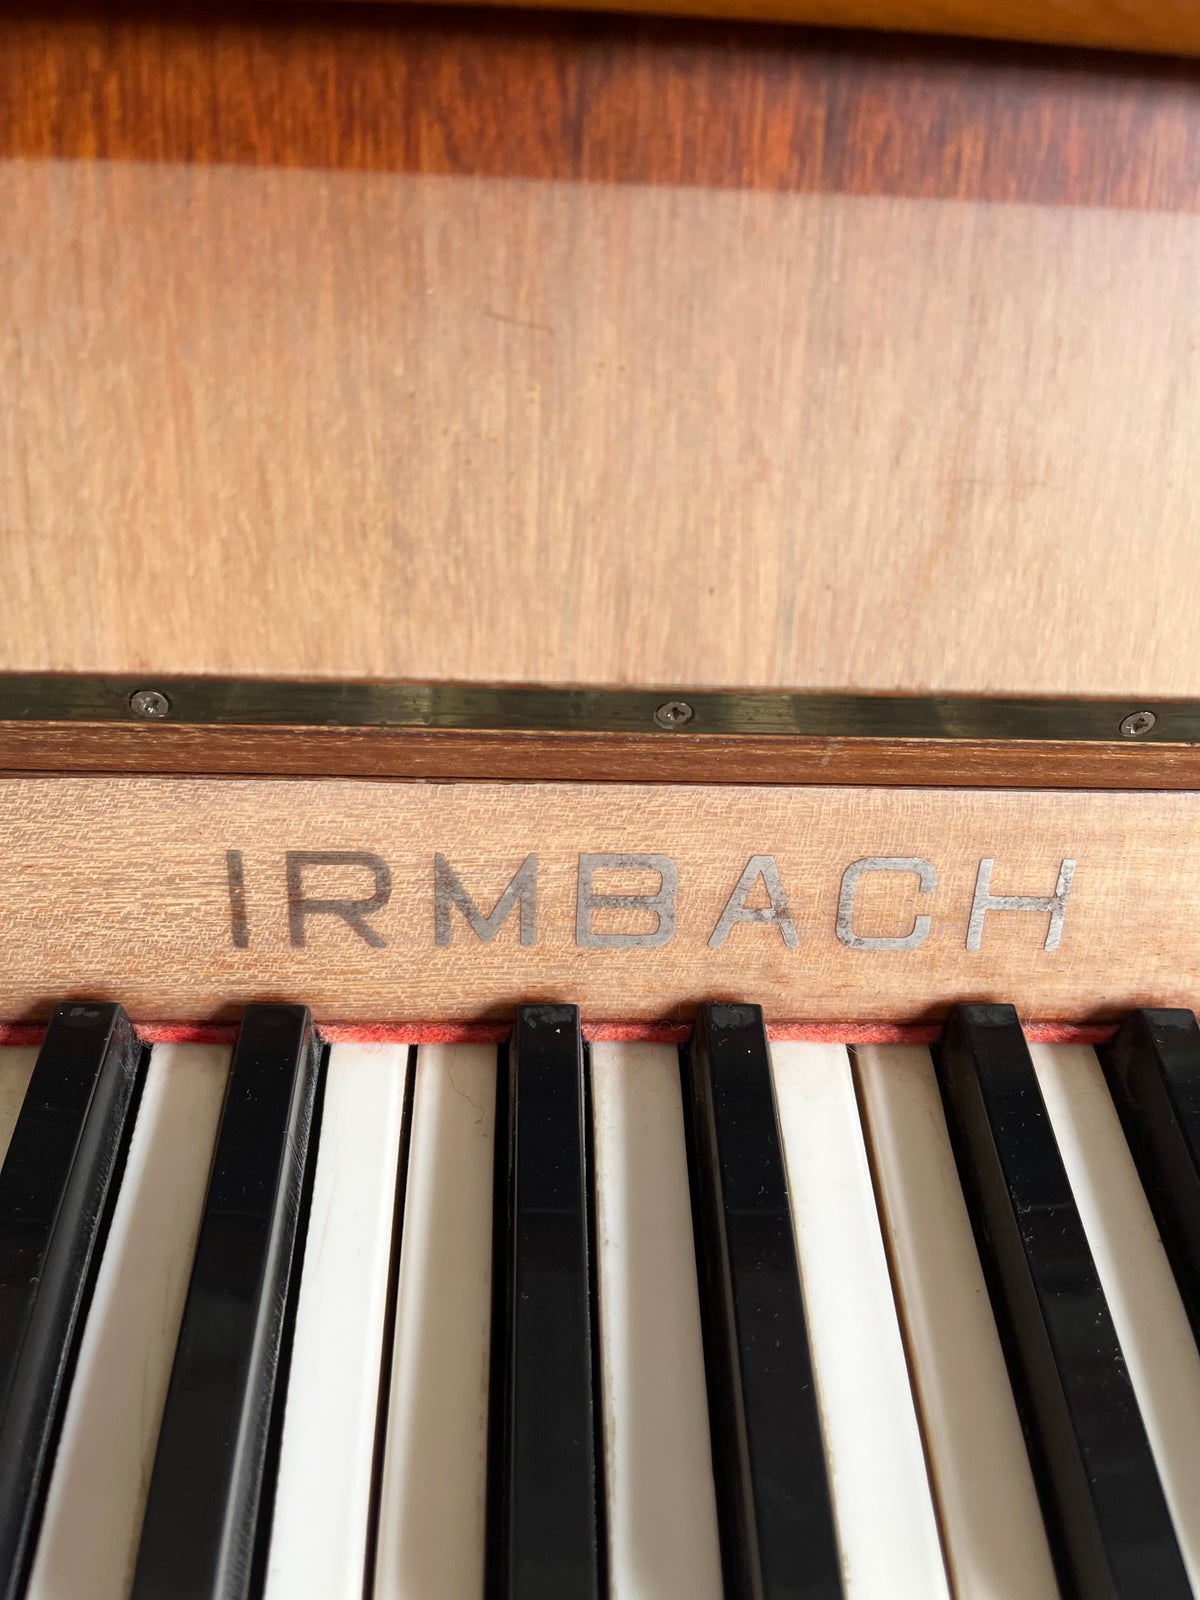 Irmbach klaver